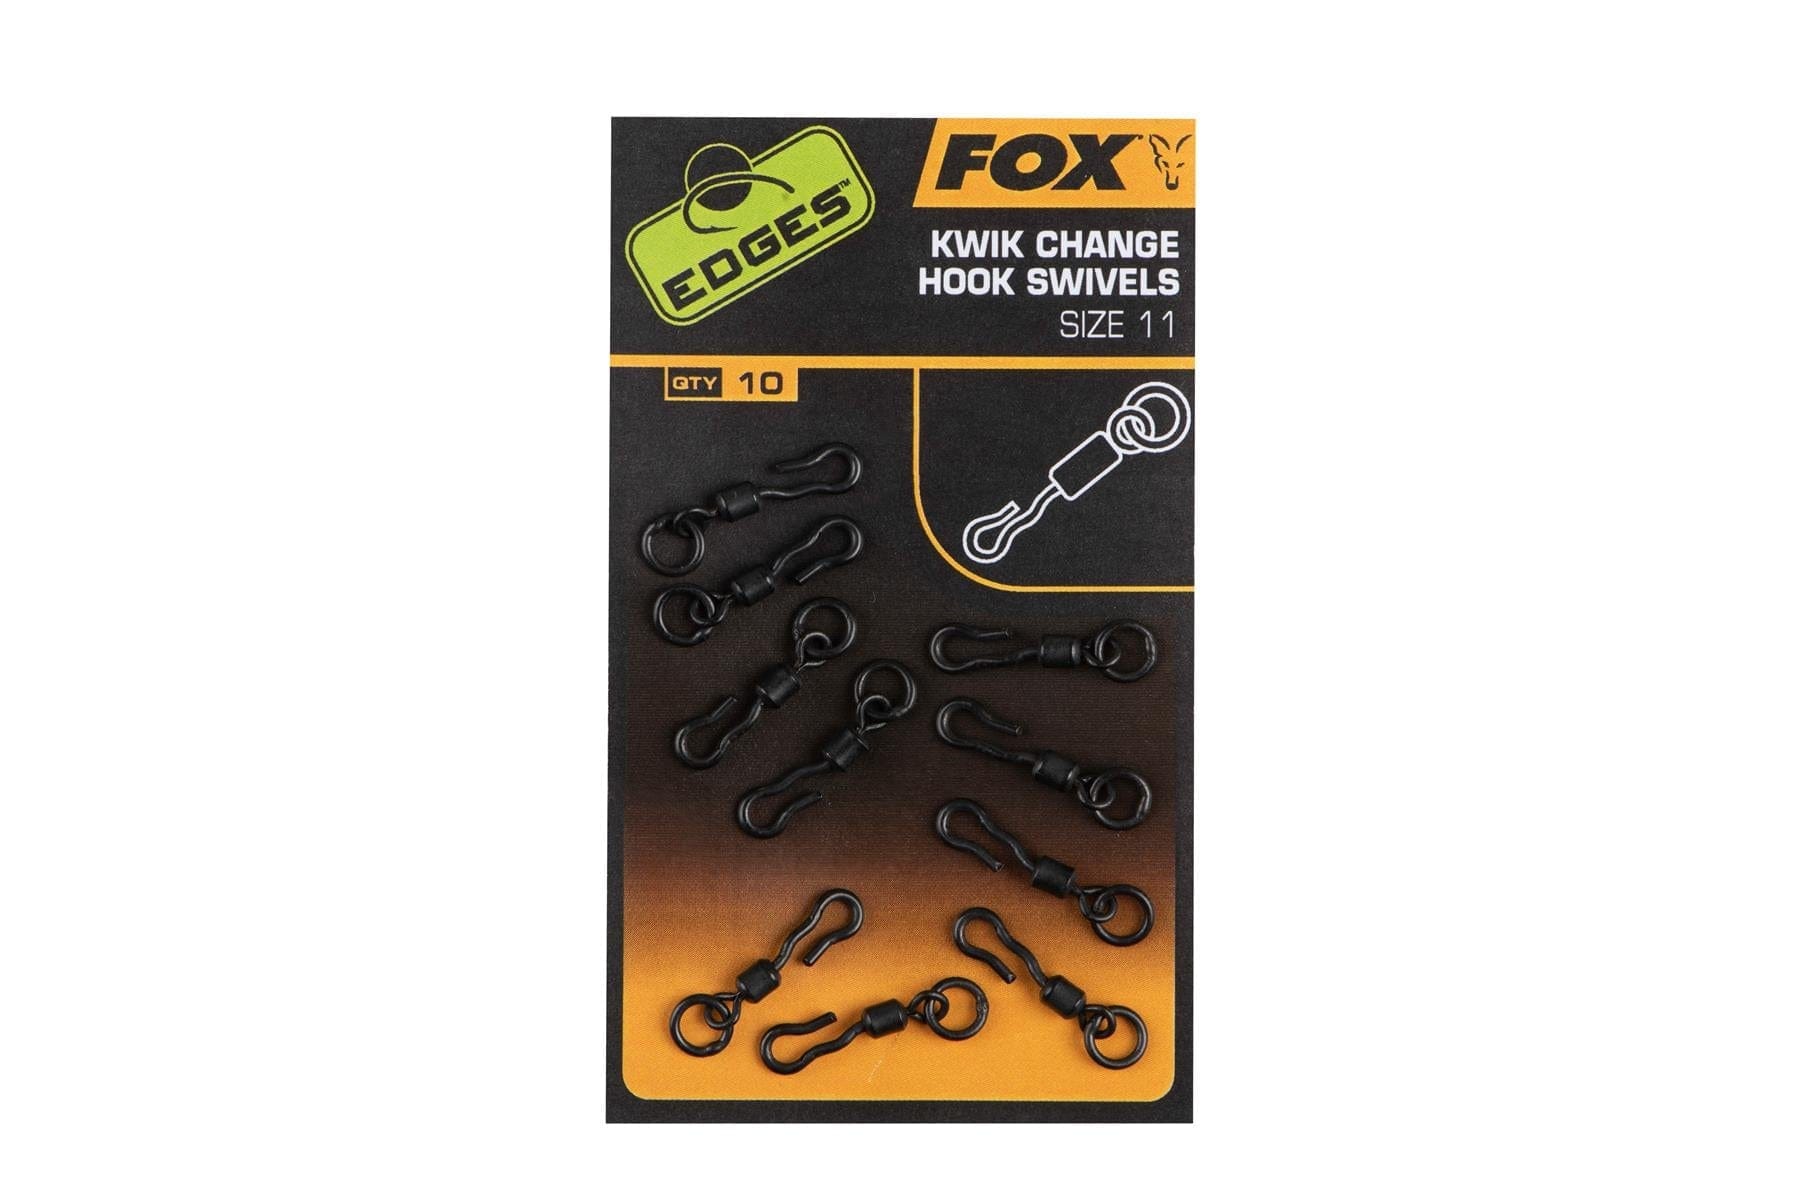 FOX Edges Kwik Change Mini Hook Swivels - Size 11.